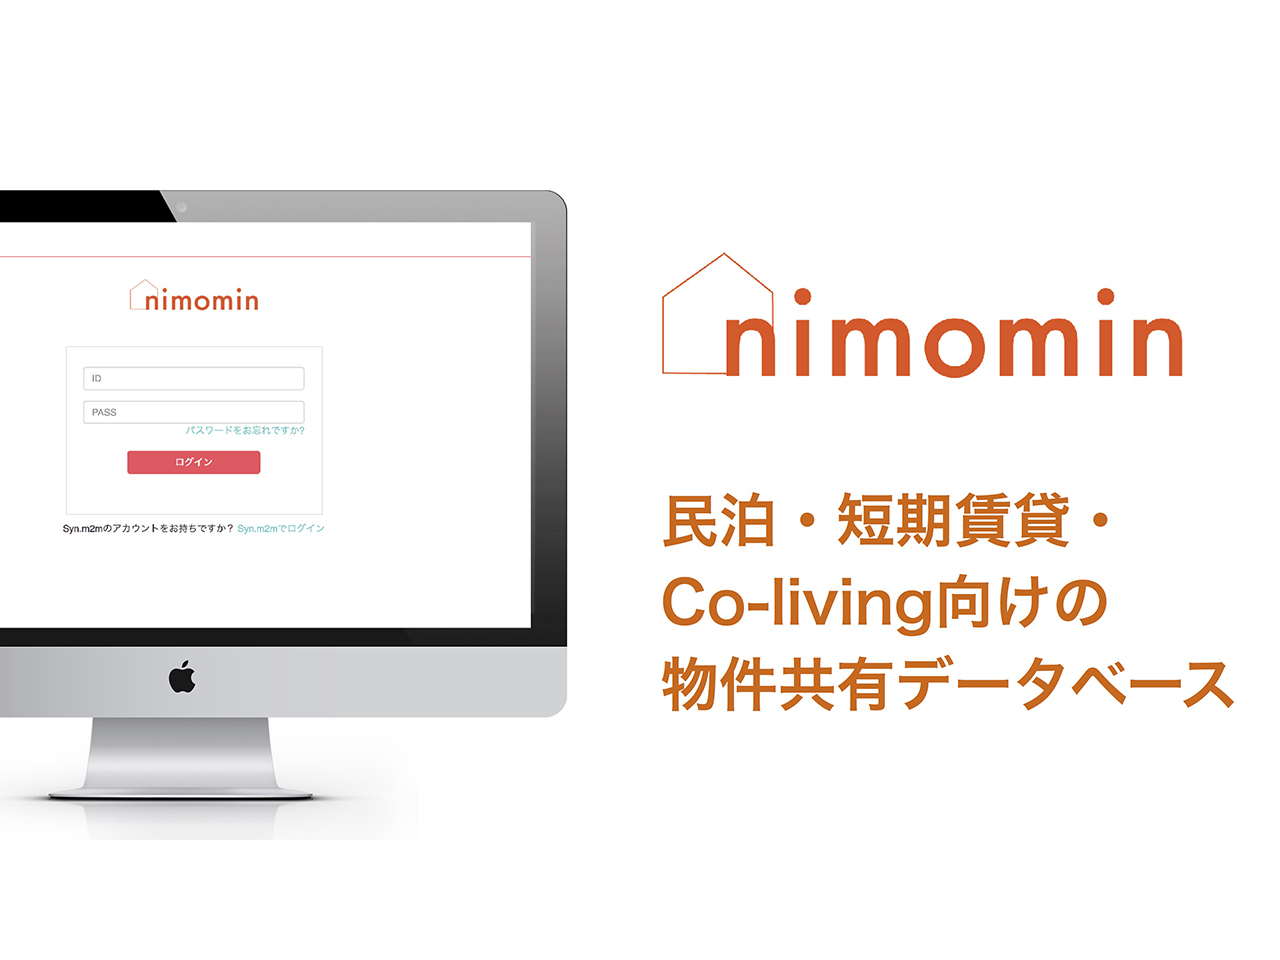 民泊・短期賃貸・コリビング物件共有データベース「nimomin」